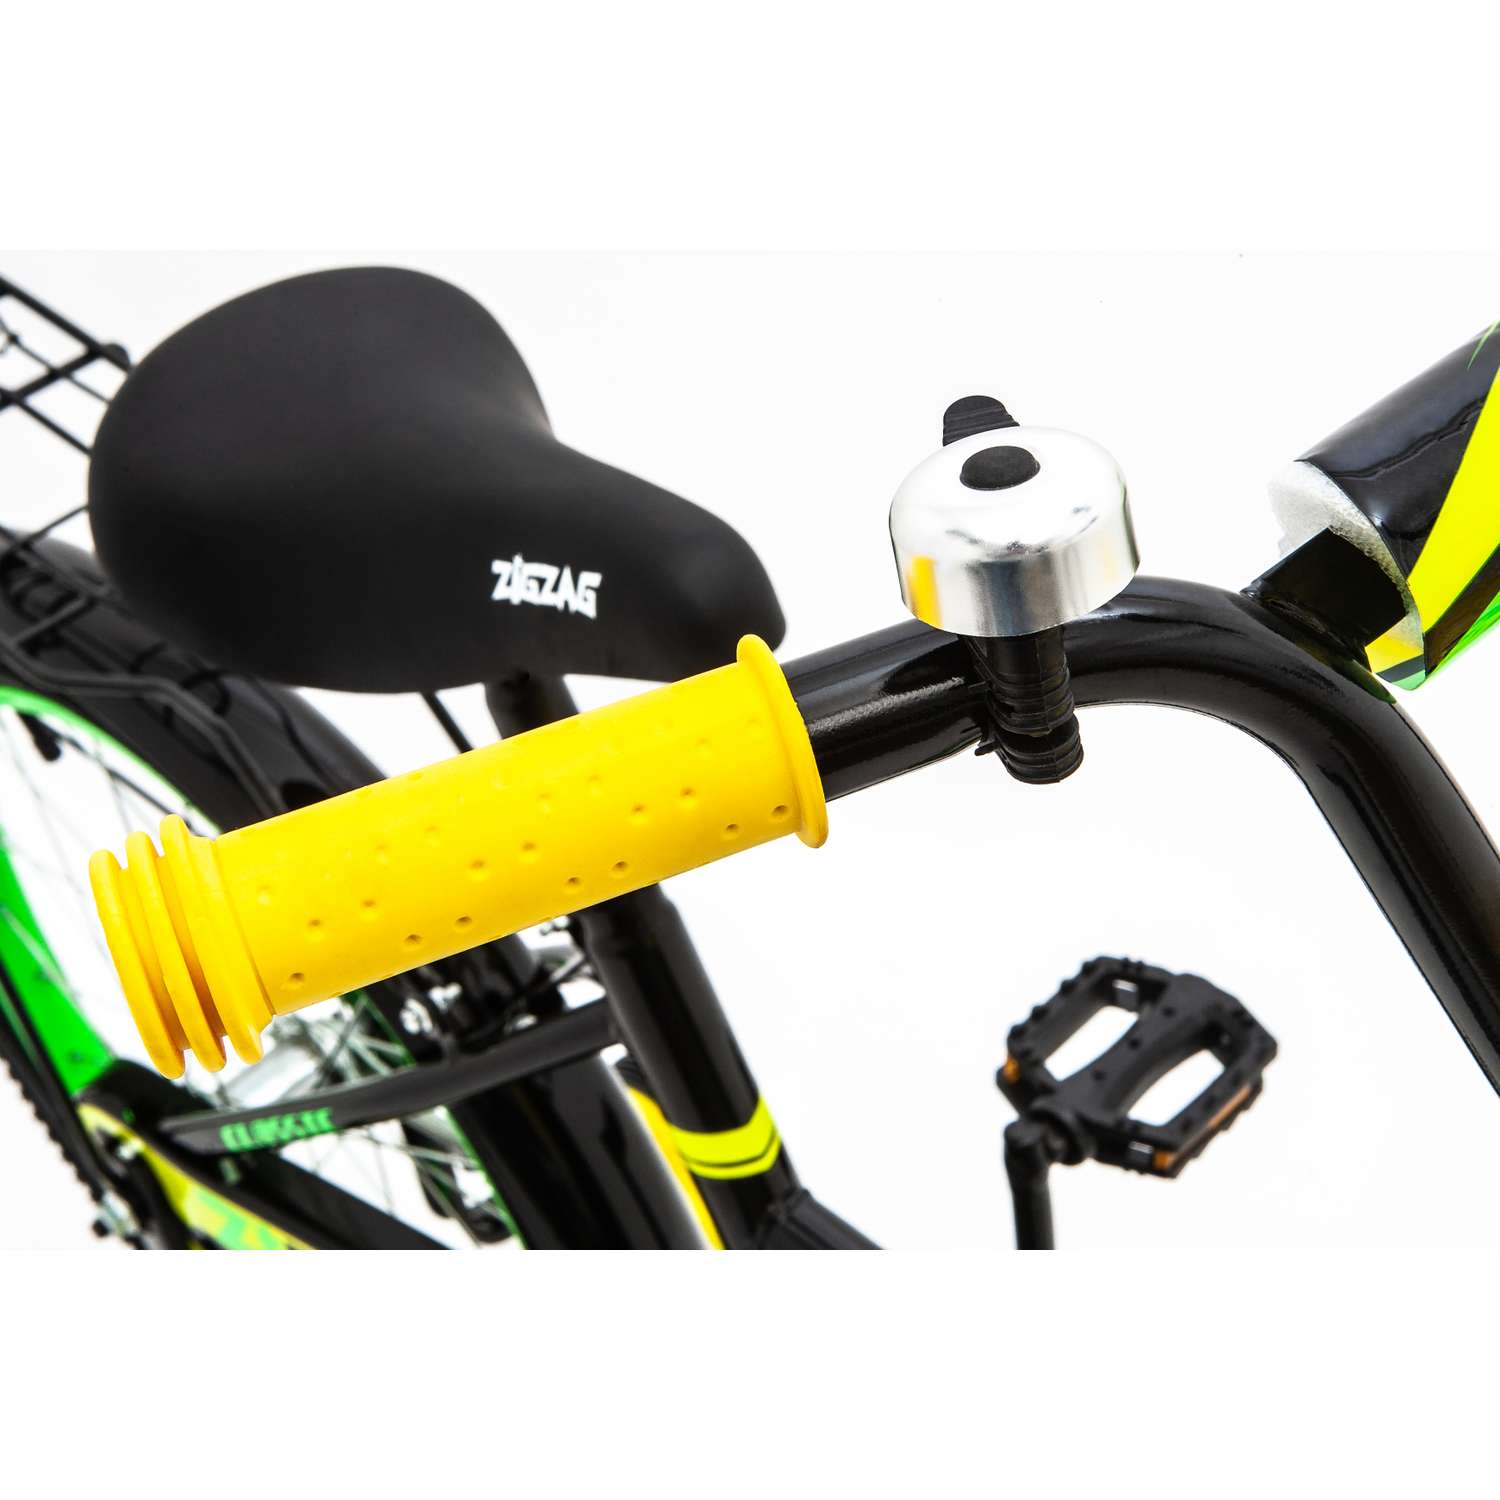 Велосипед ZigZag CLASSIC черный желтый зеленый 20 дюймов - фото 6